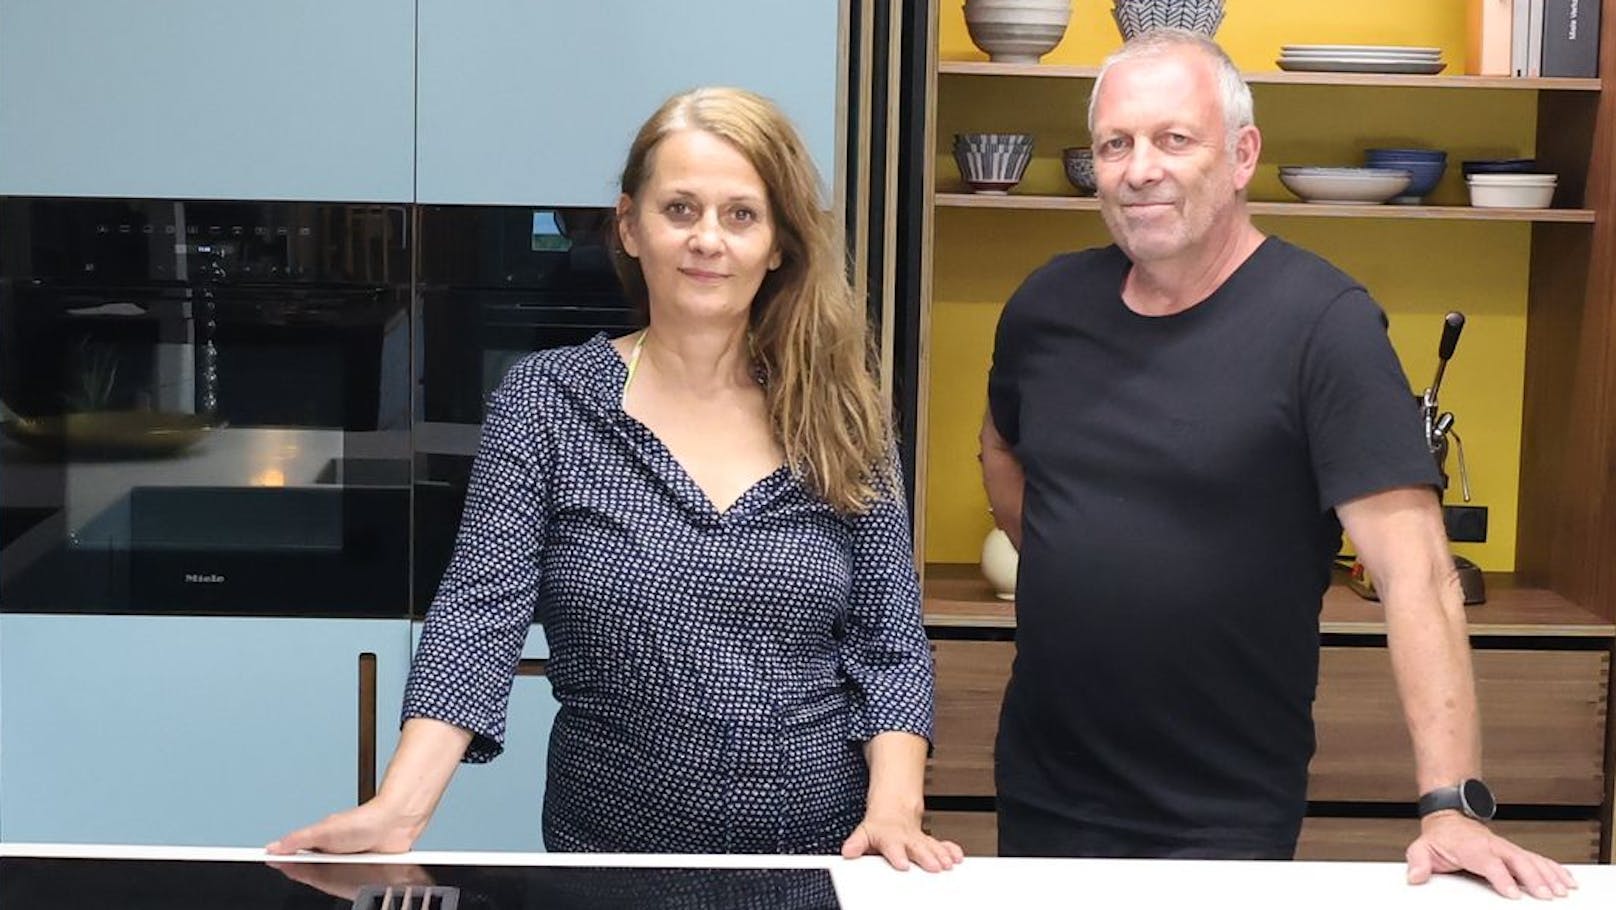 Manuela Freigang und Christian Bachmann in der alten Ikea-Küche mit neuen Fronten